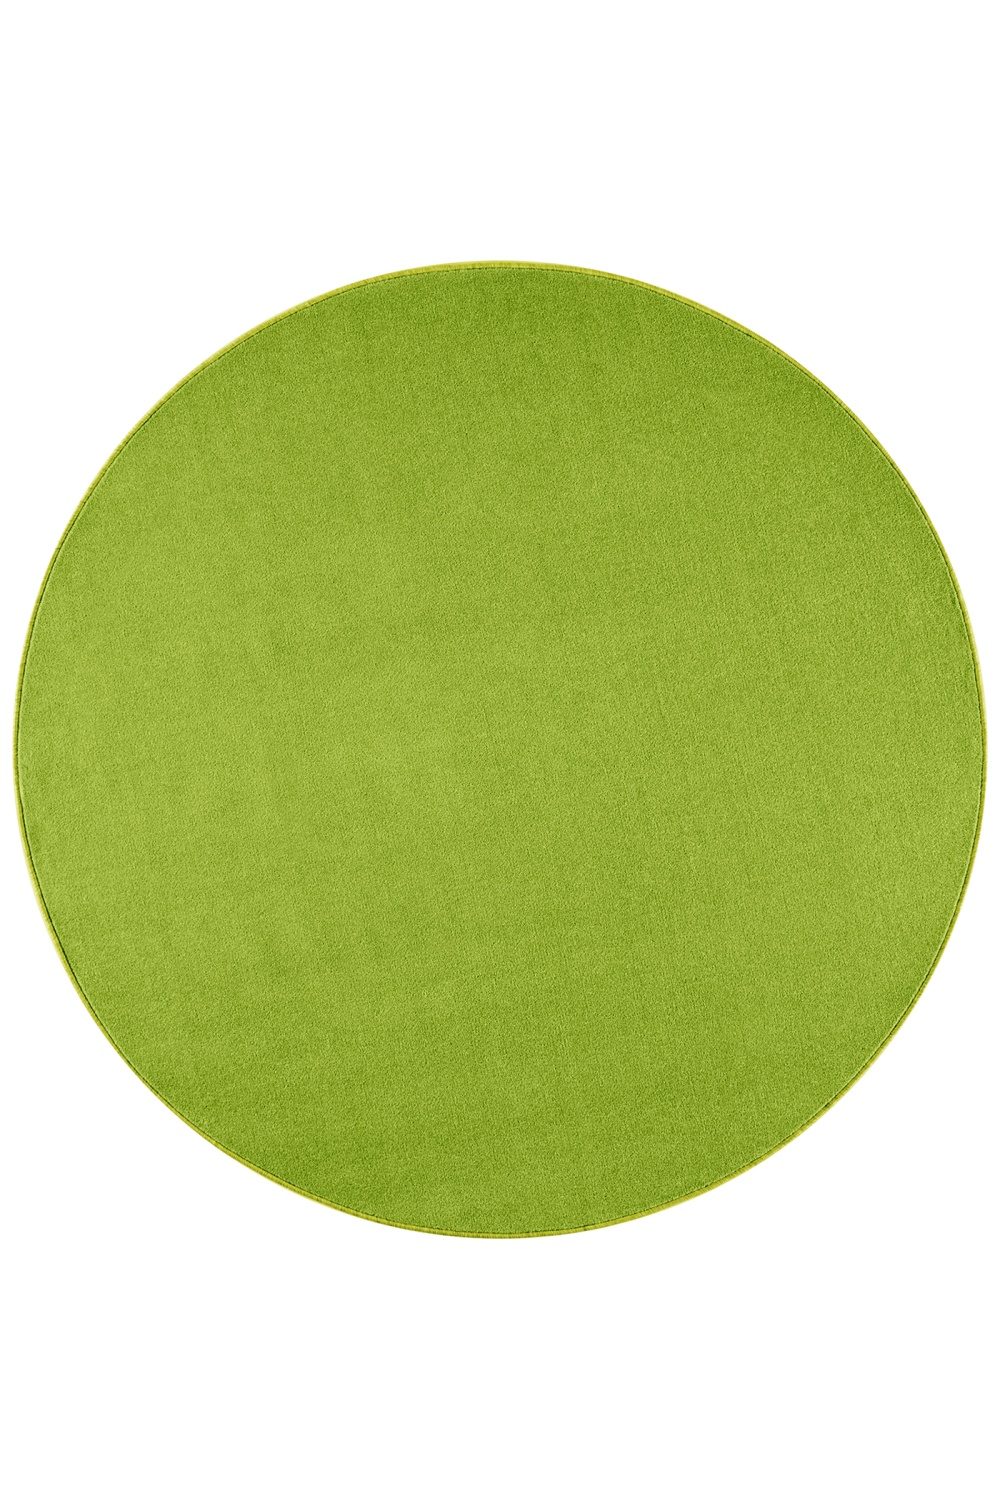 Dywan Zielony Jednokolorowy Nasty Okrągły 101149 Green